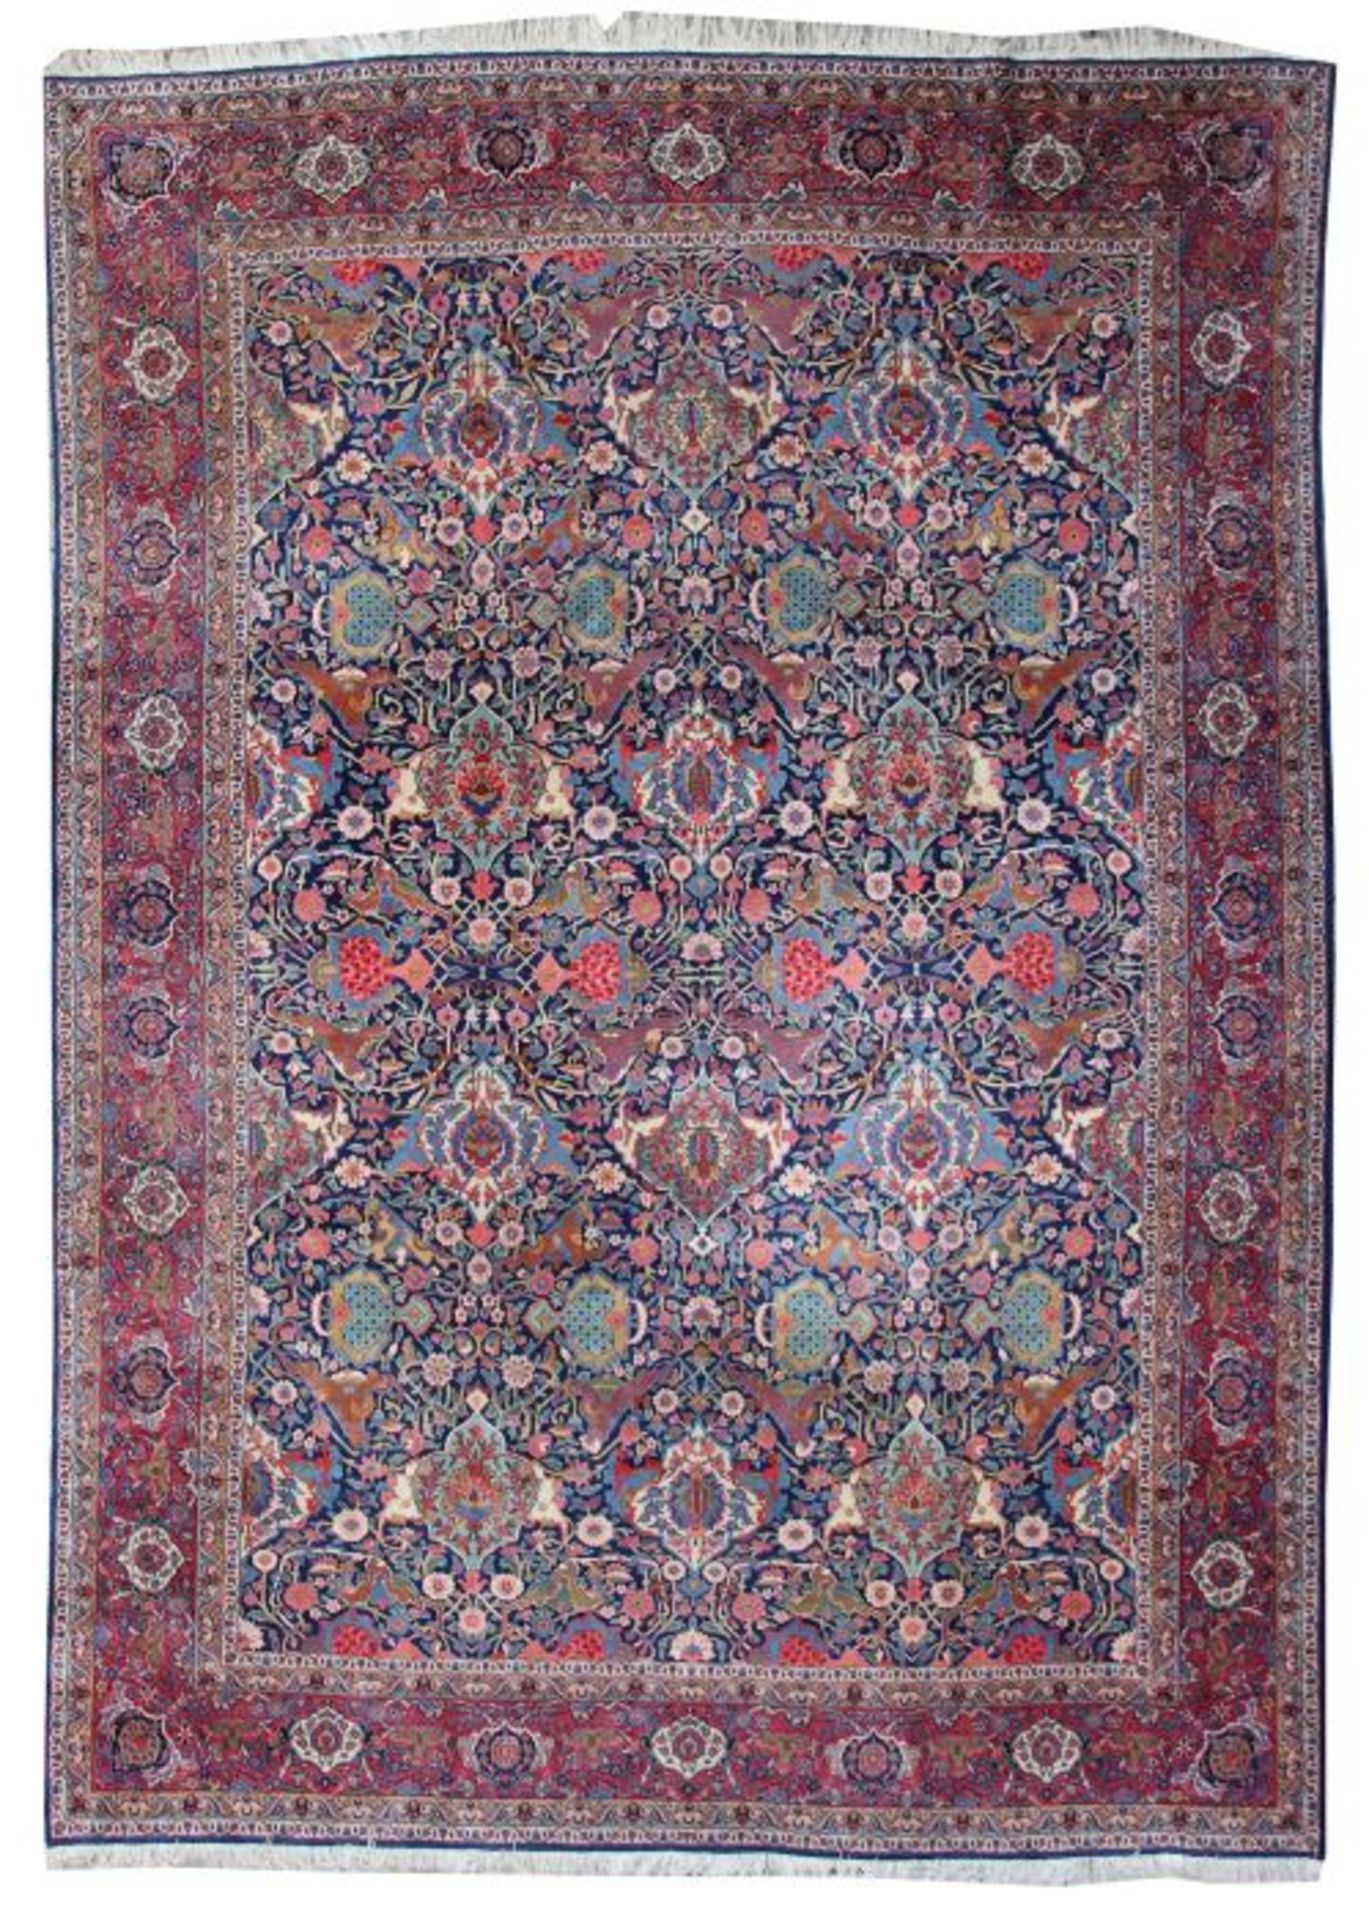 Kashan durchgemustert Persien, 2. Hälfte 20. Jh., Wolle auf Baumwolle, das blaue Innenfeld